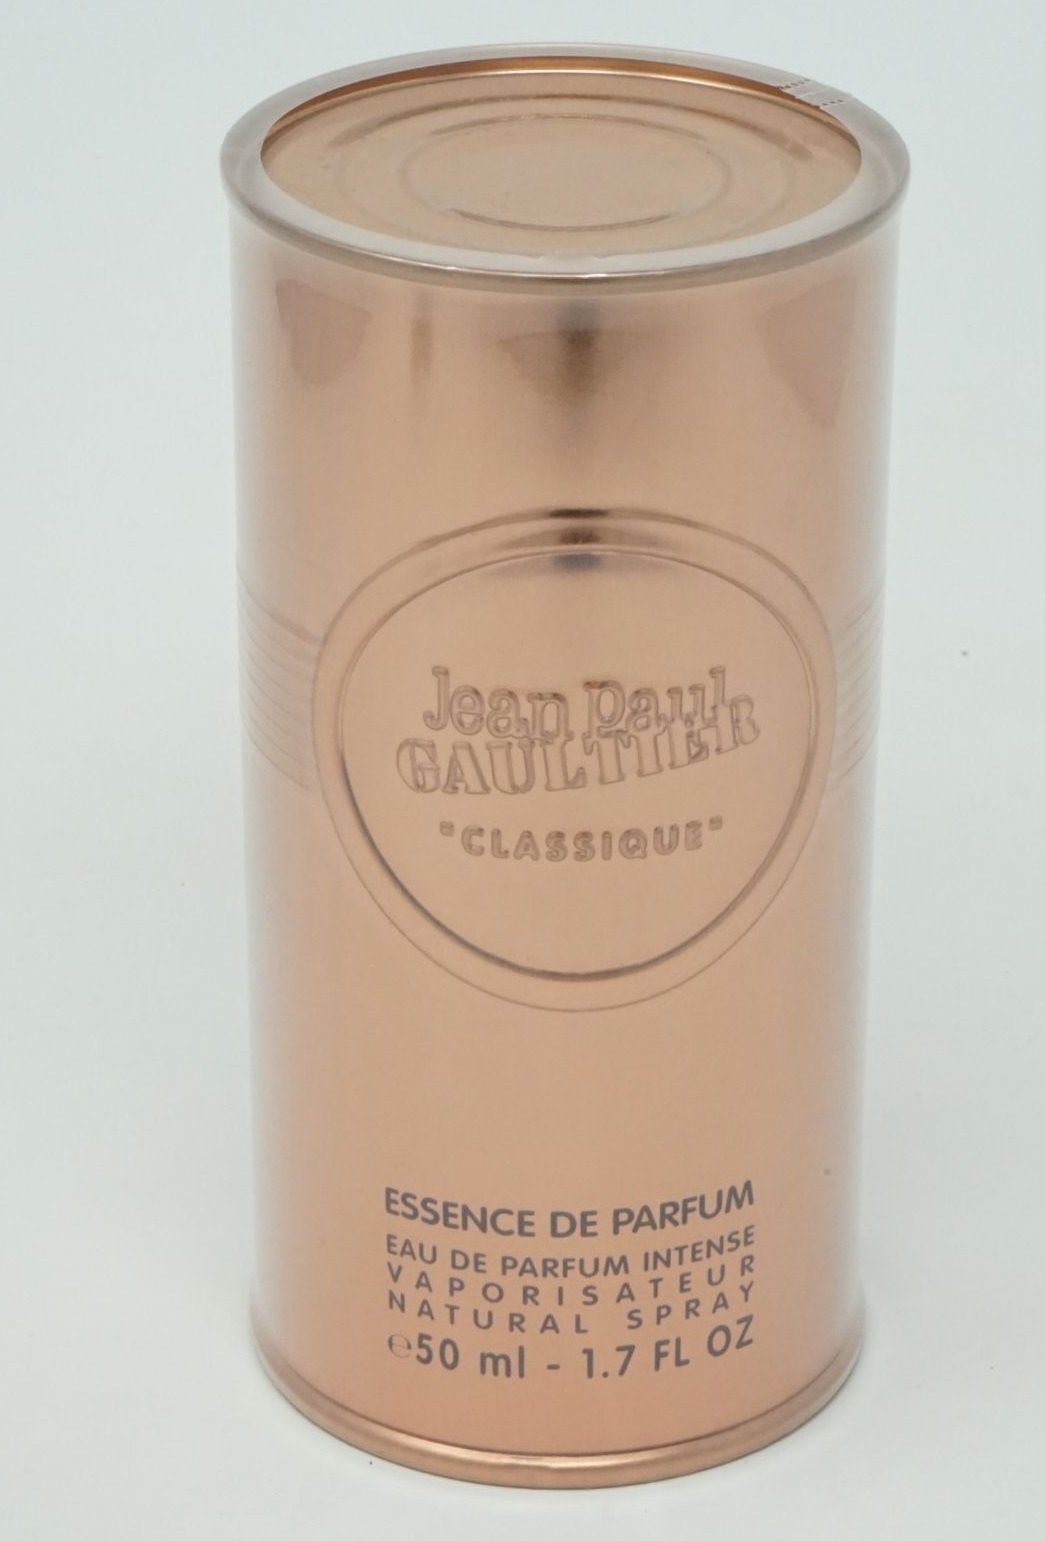 JEAN PAUL GAULTIER Eau de Parfum Jean Paul Gaultier Classique Essence Eau  de Parfum Intense Spray 50 ml